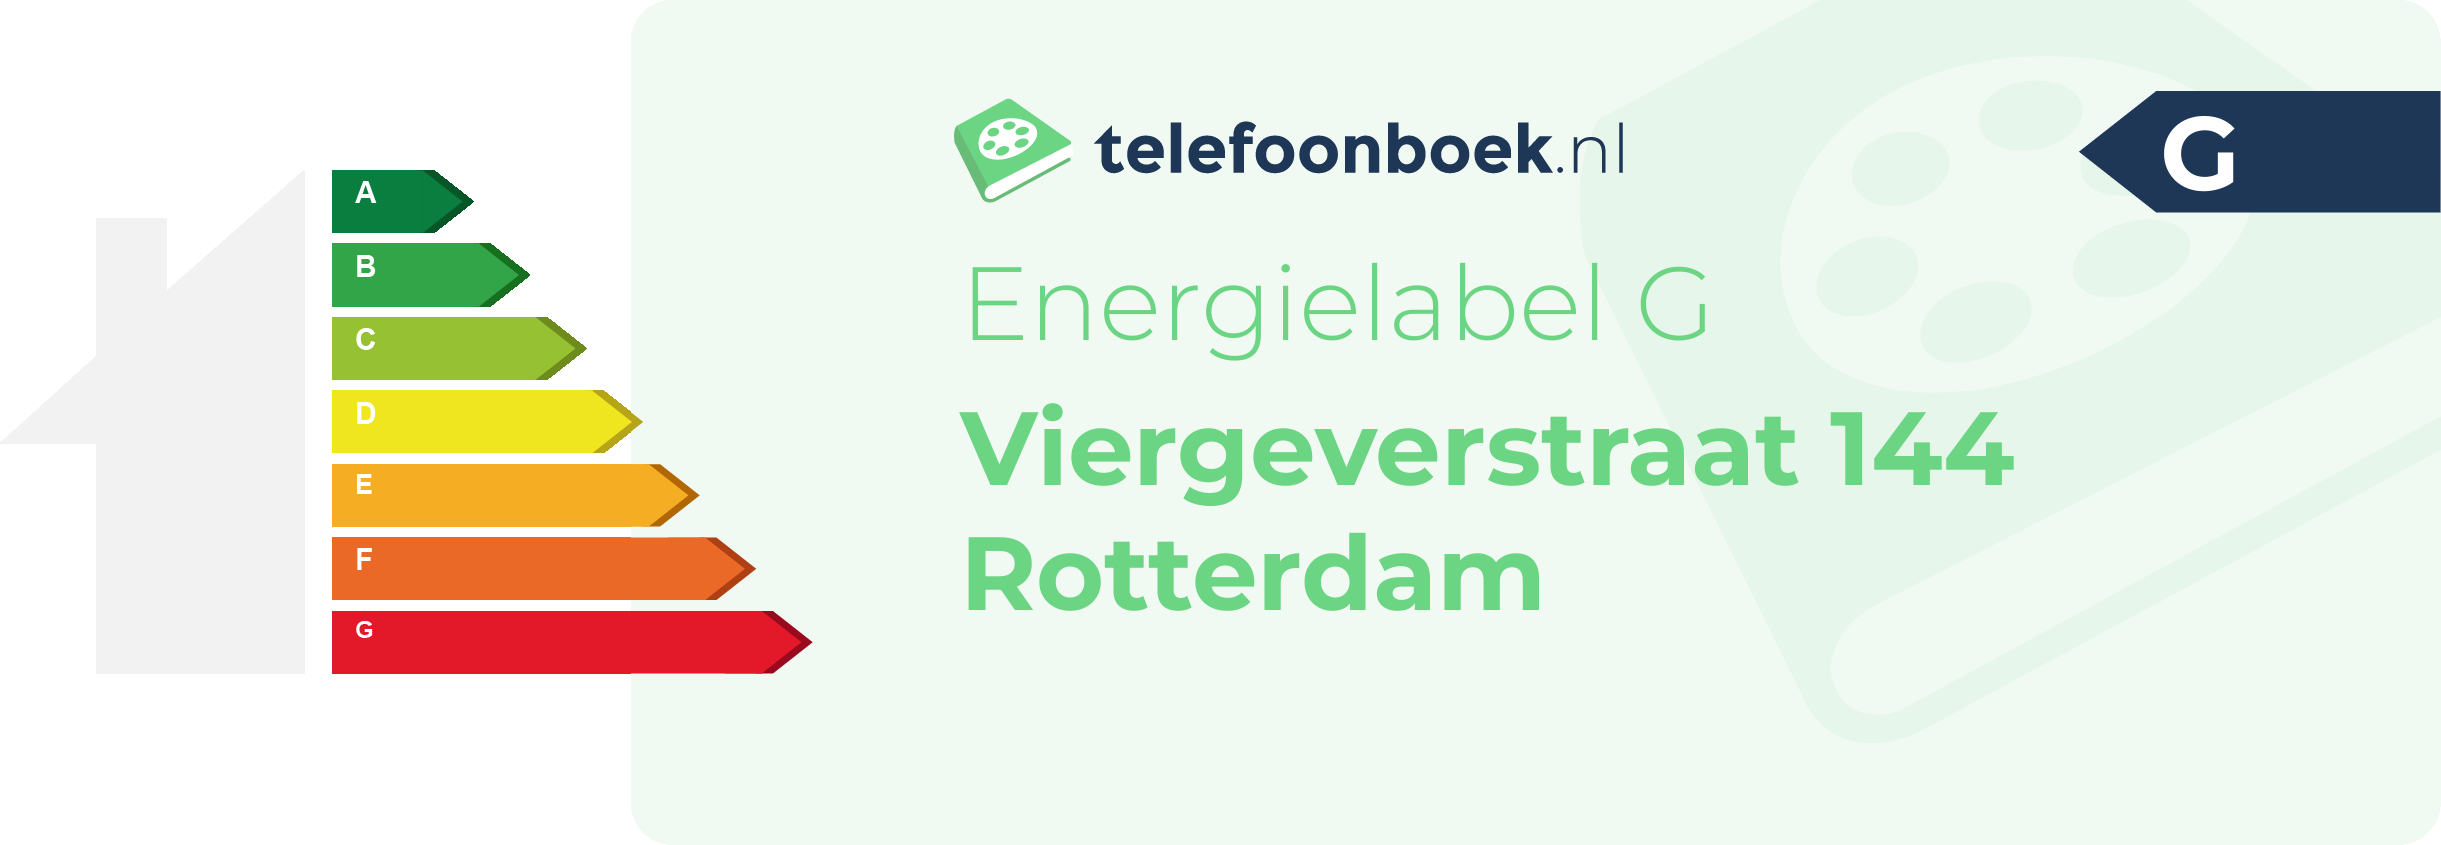 Energielabel Viergeverstraat 144 Rotterdam